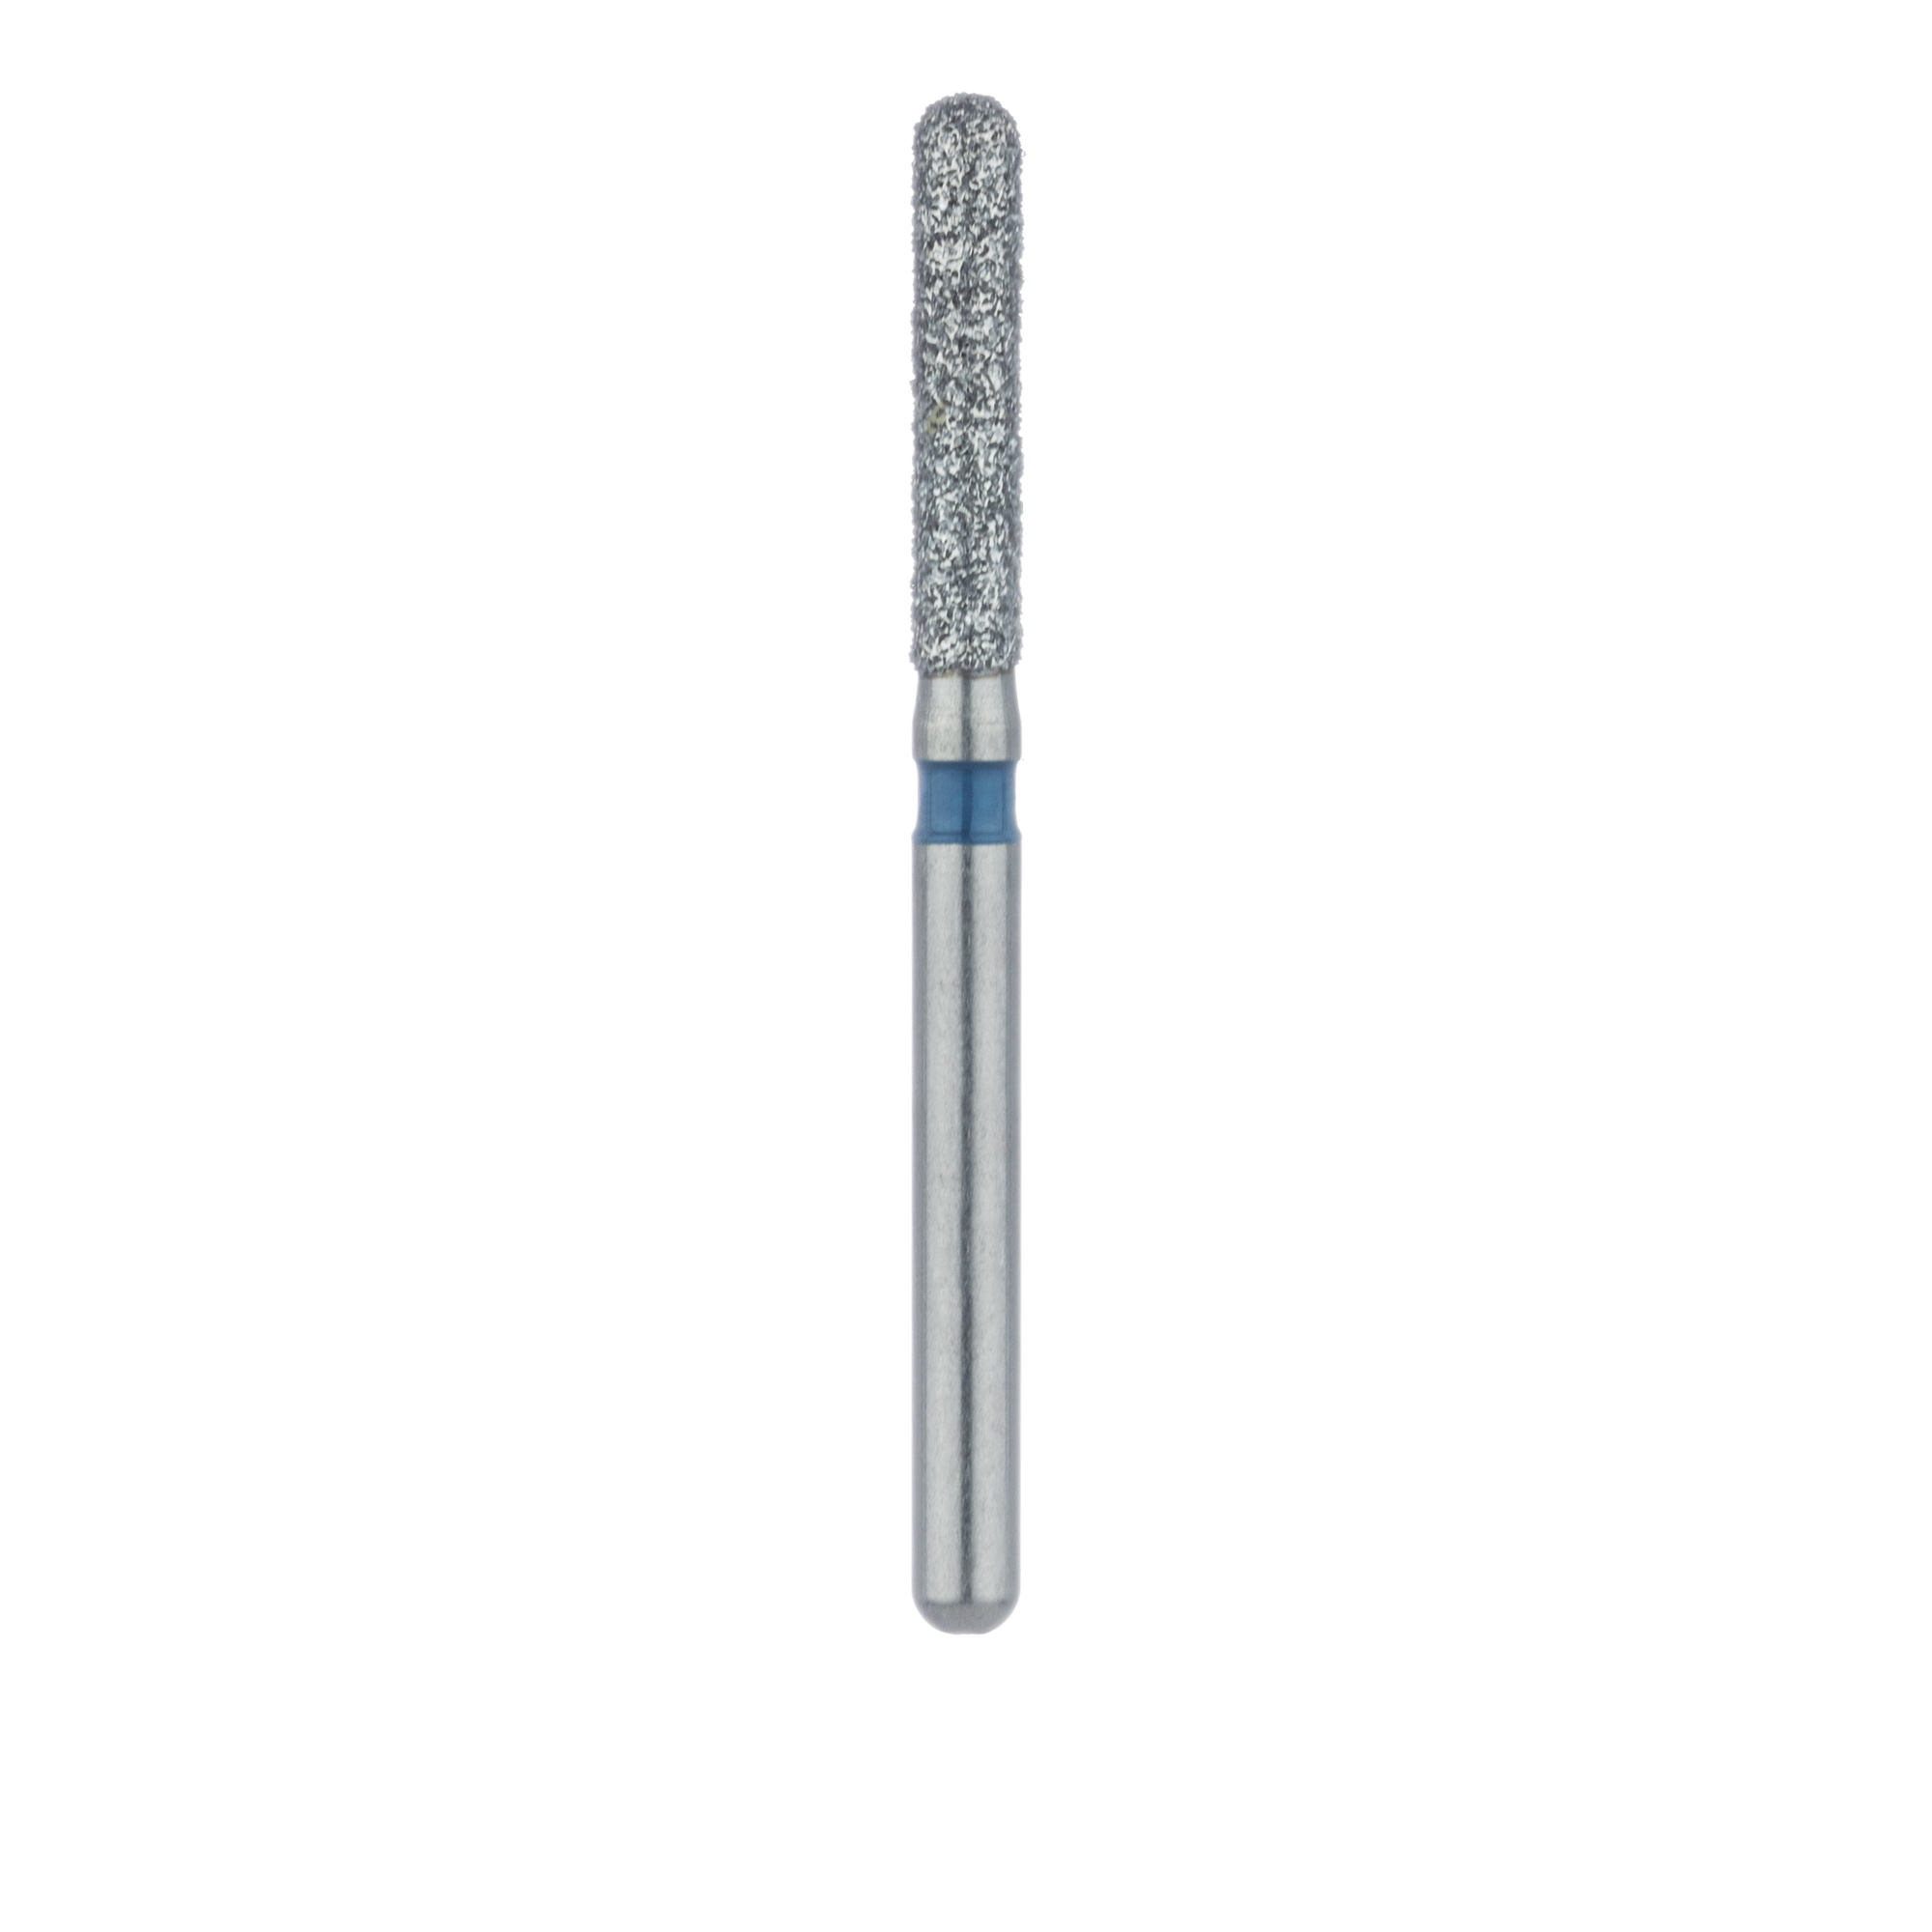 881-016-FG Round End Cylinder Diamond Bur, 1.6mm Ø, Medium, FG